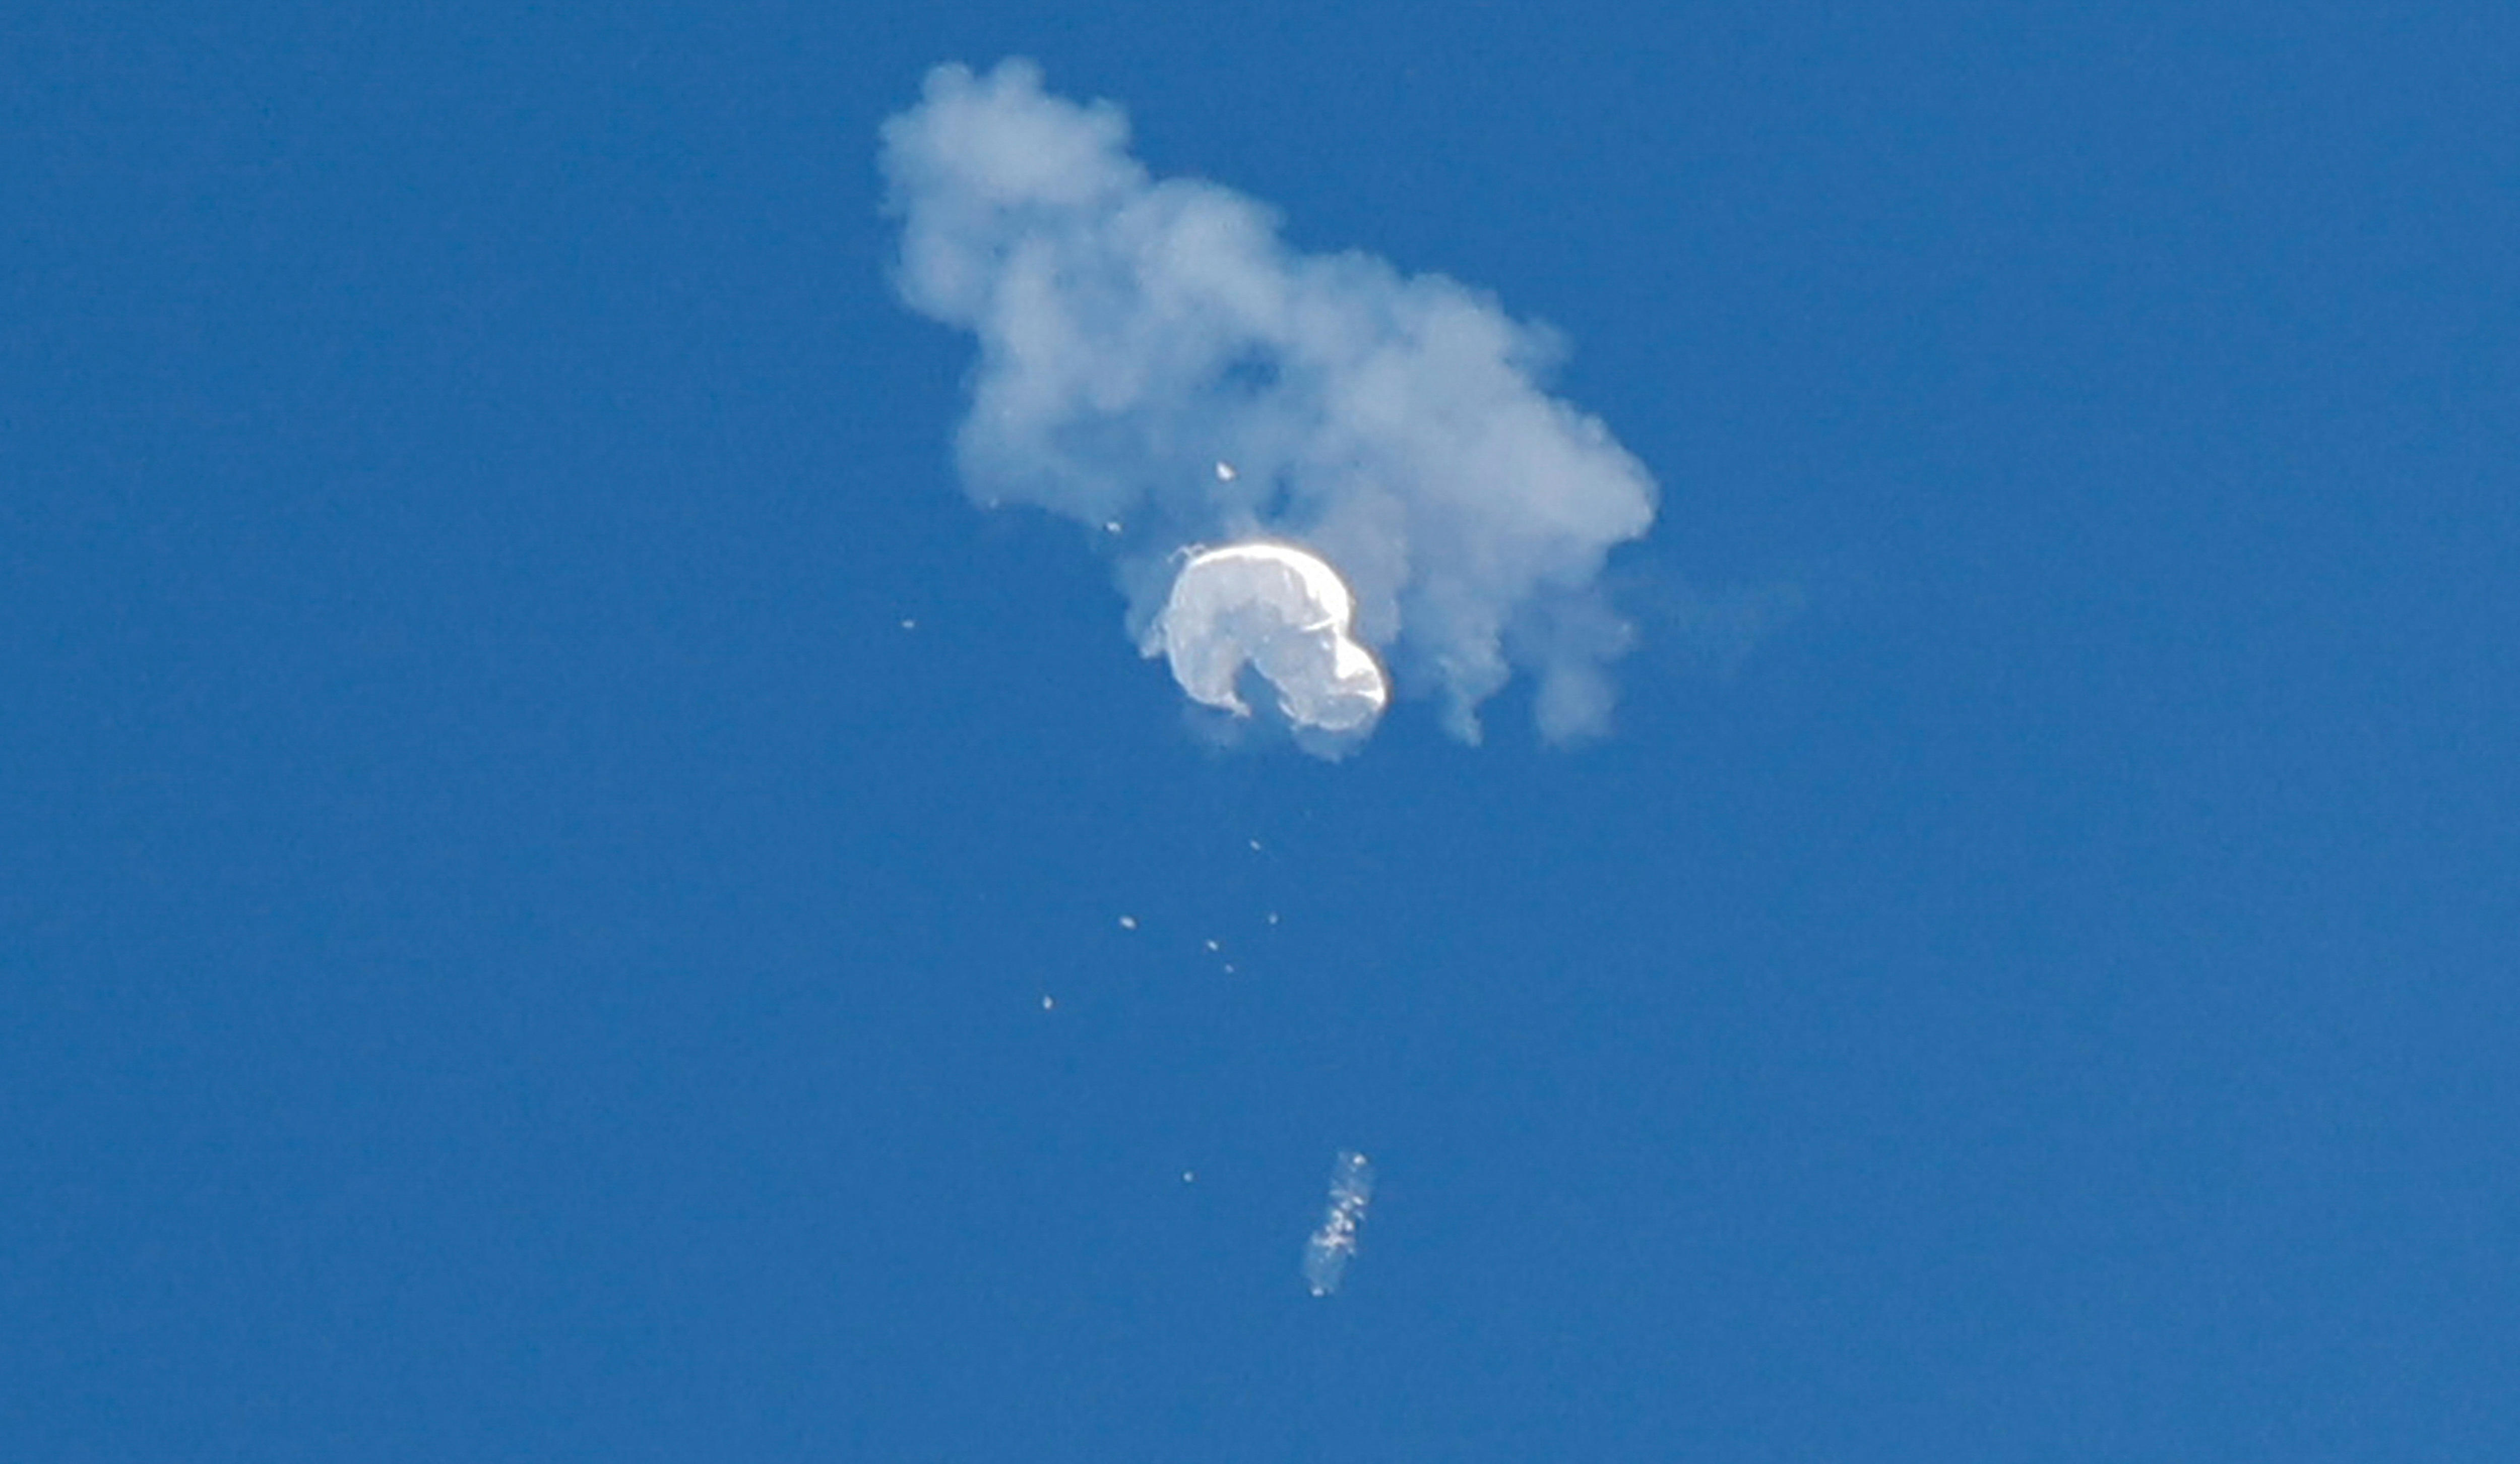 白色气球从天而降时，一缕烟雾和碎屑围绕着它。